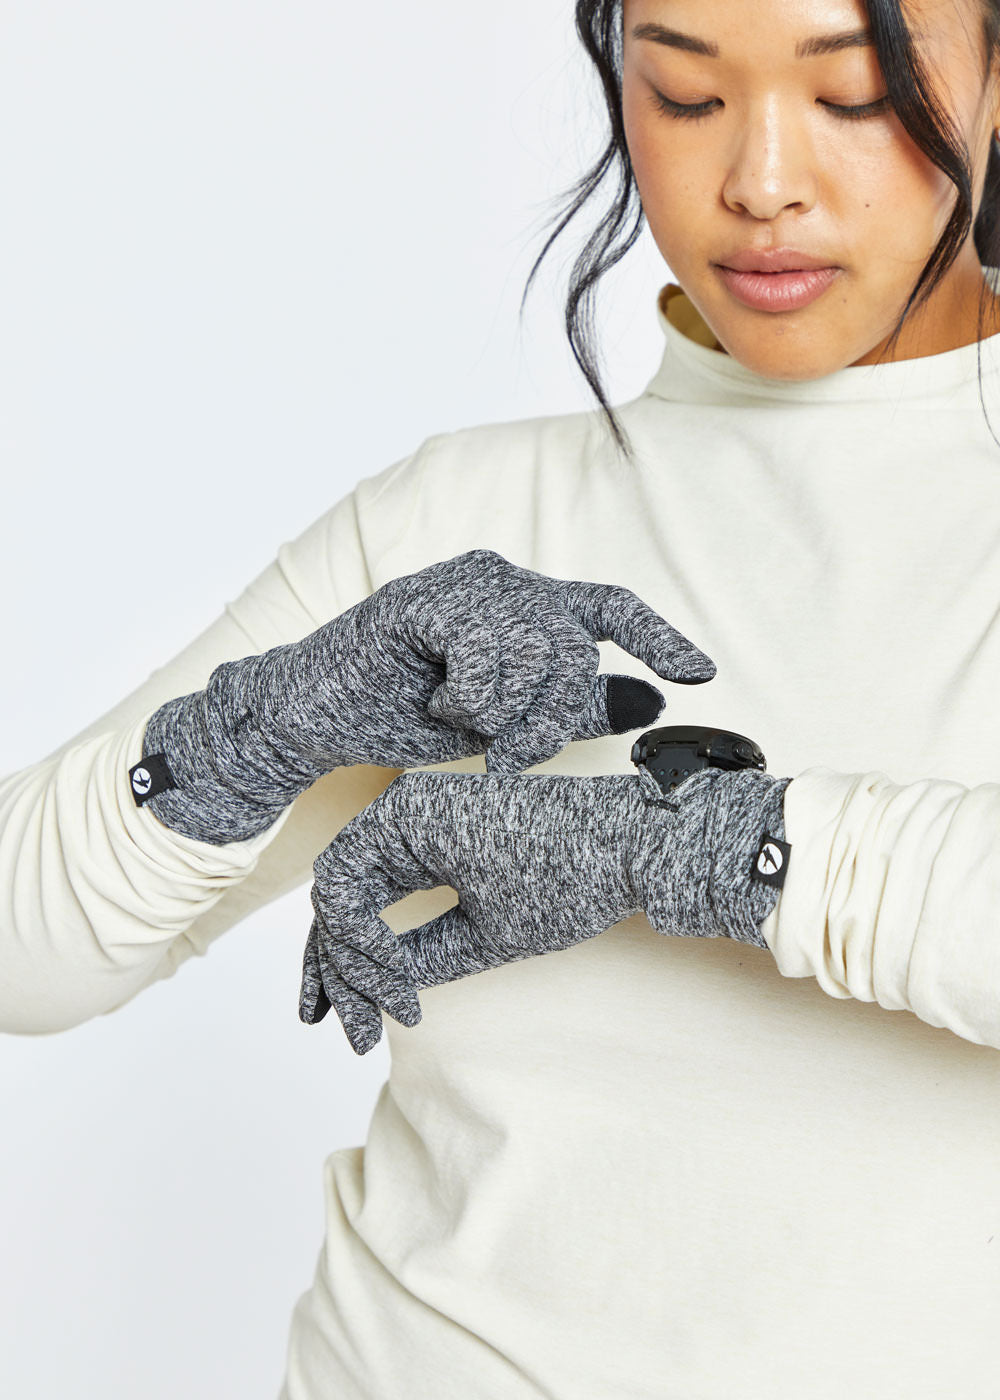 Oiselle Women's Power Move Running Gloves